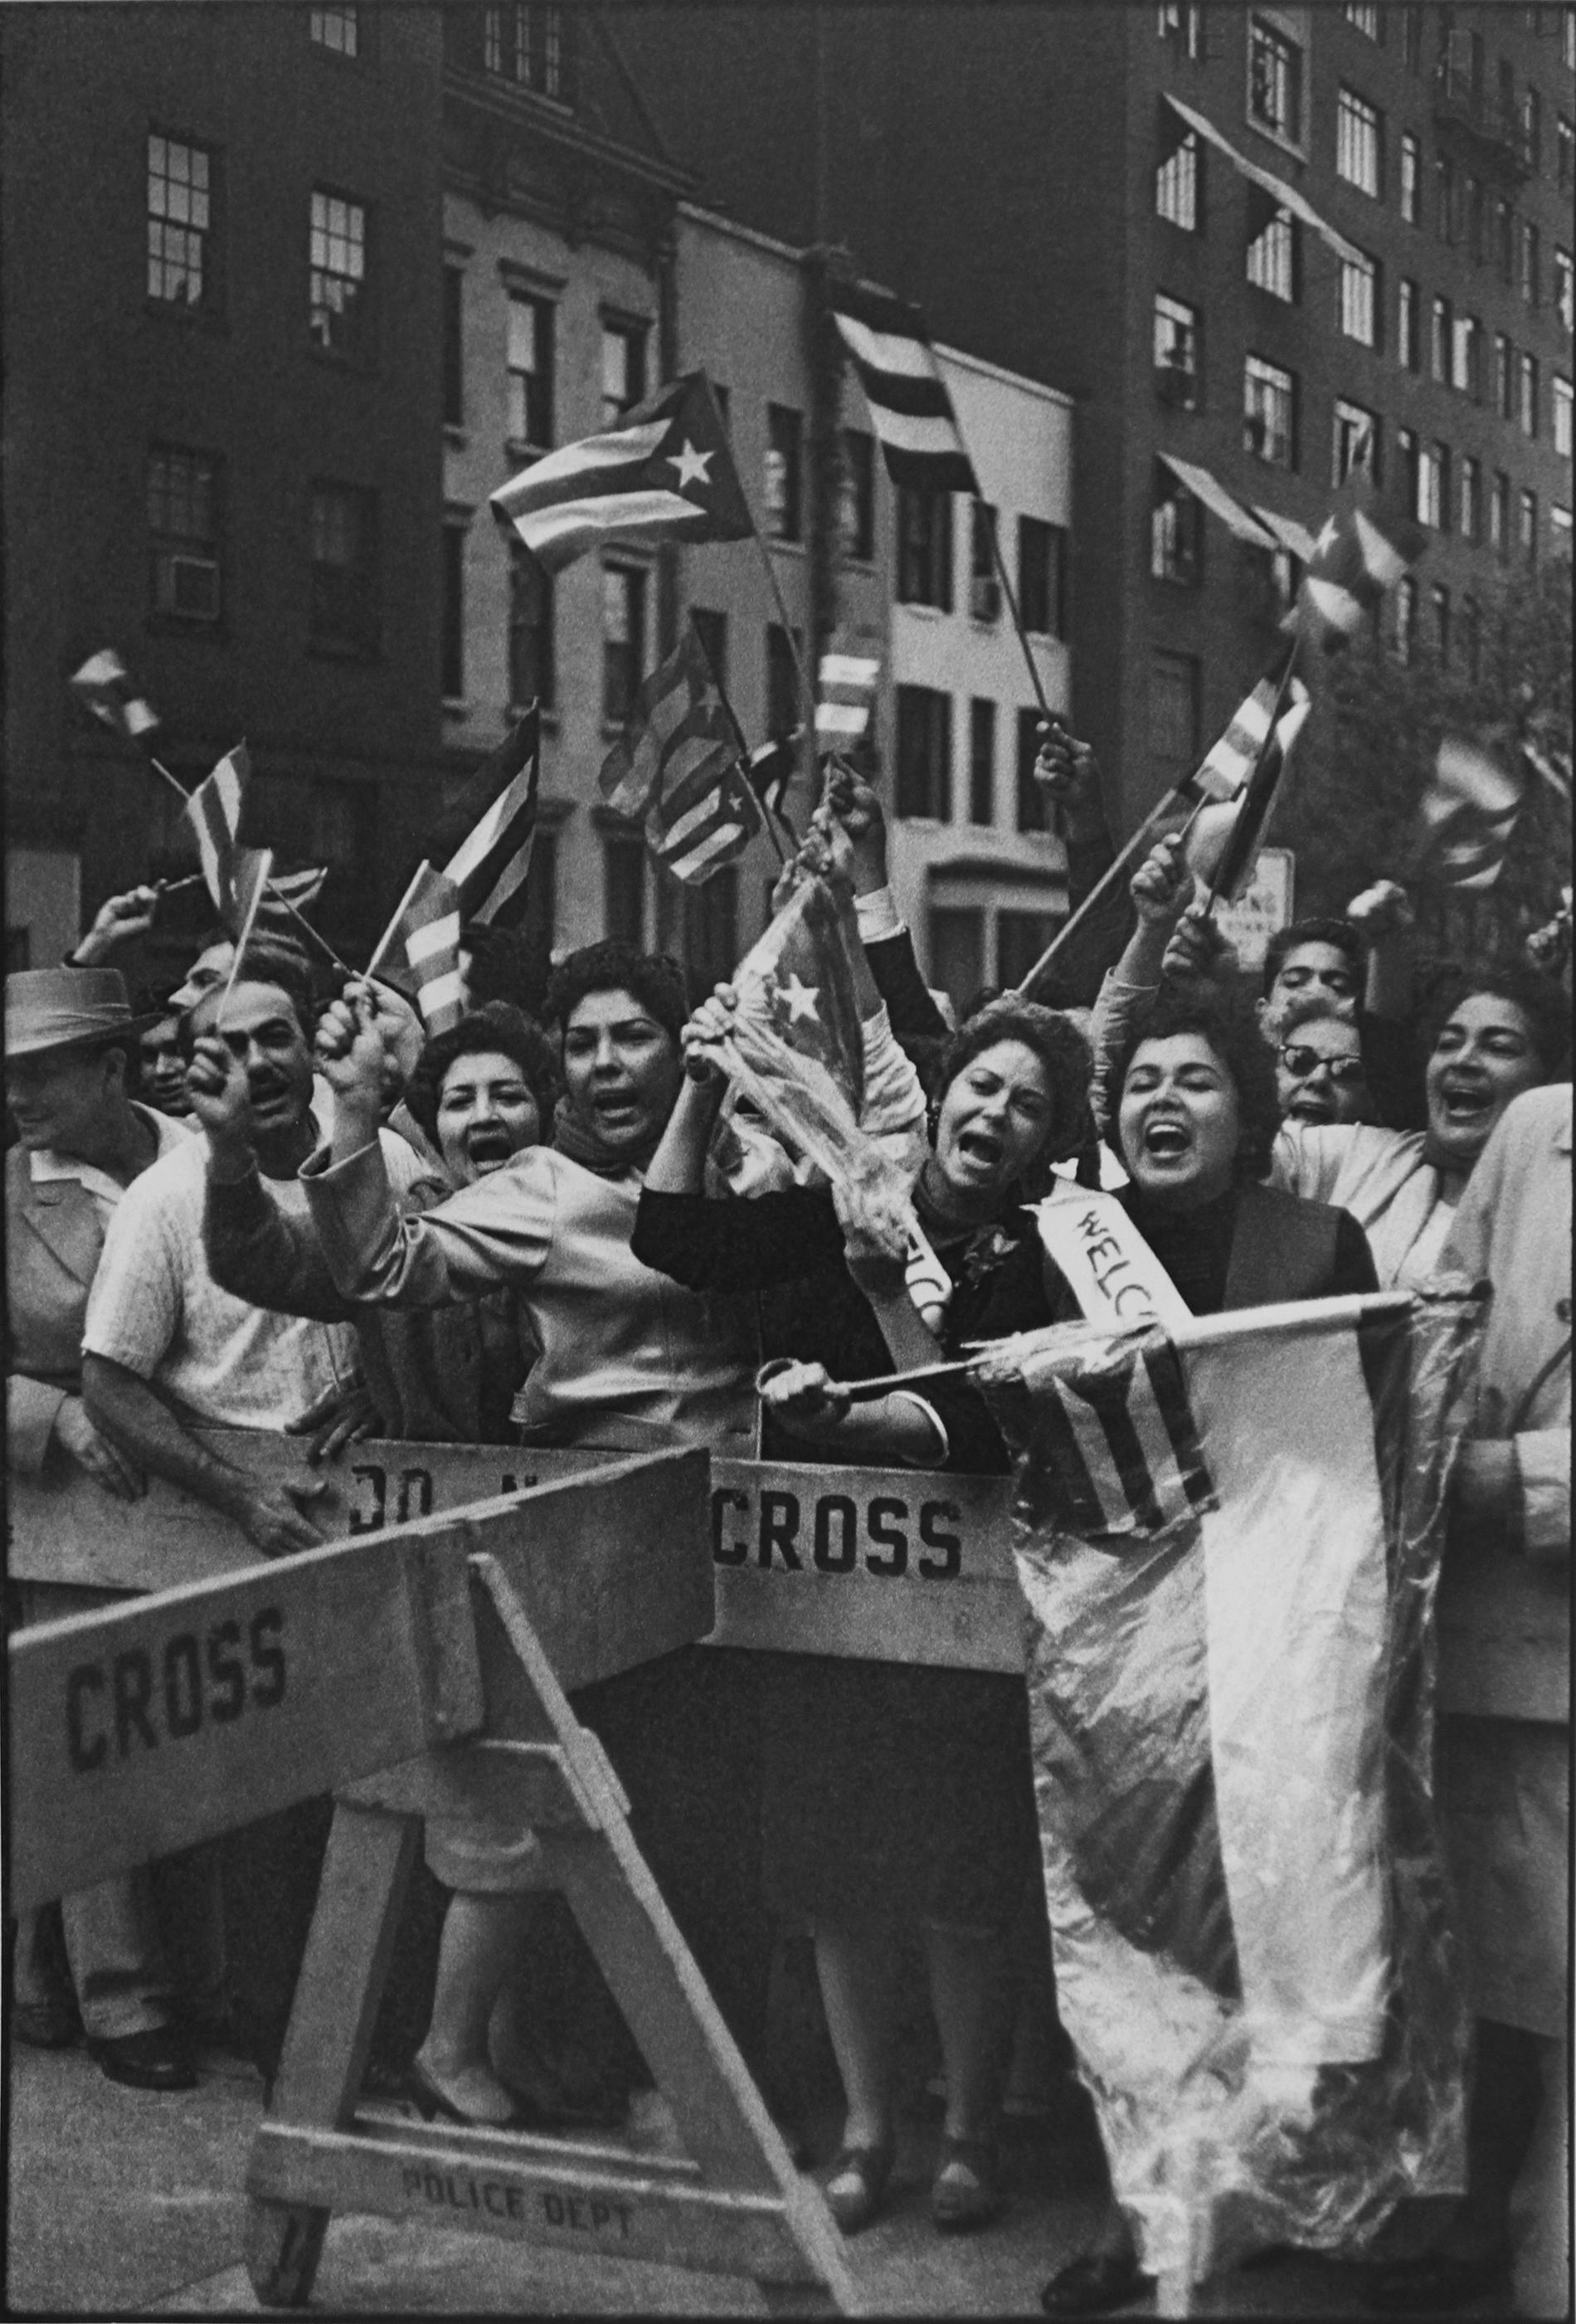 Manifestation pro Fidel Castro, New York, 1960 - Henri Cartier-Bresson
Signé et tamponné avec le cachet du photographe
Tirage à la gélatine argentique
14 x 9 1/2 pouces

Henri Cartier-Bresson (1908-2004), sans doute le photographe le plus important